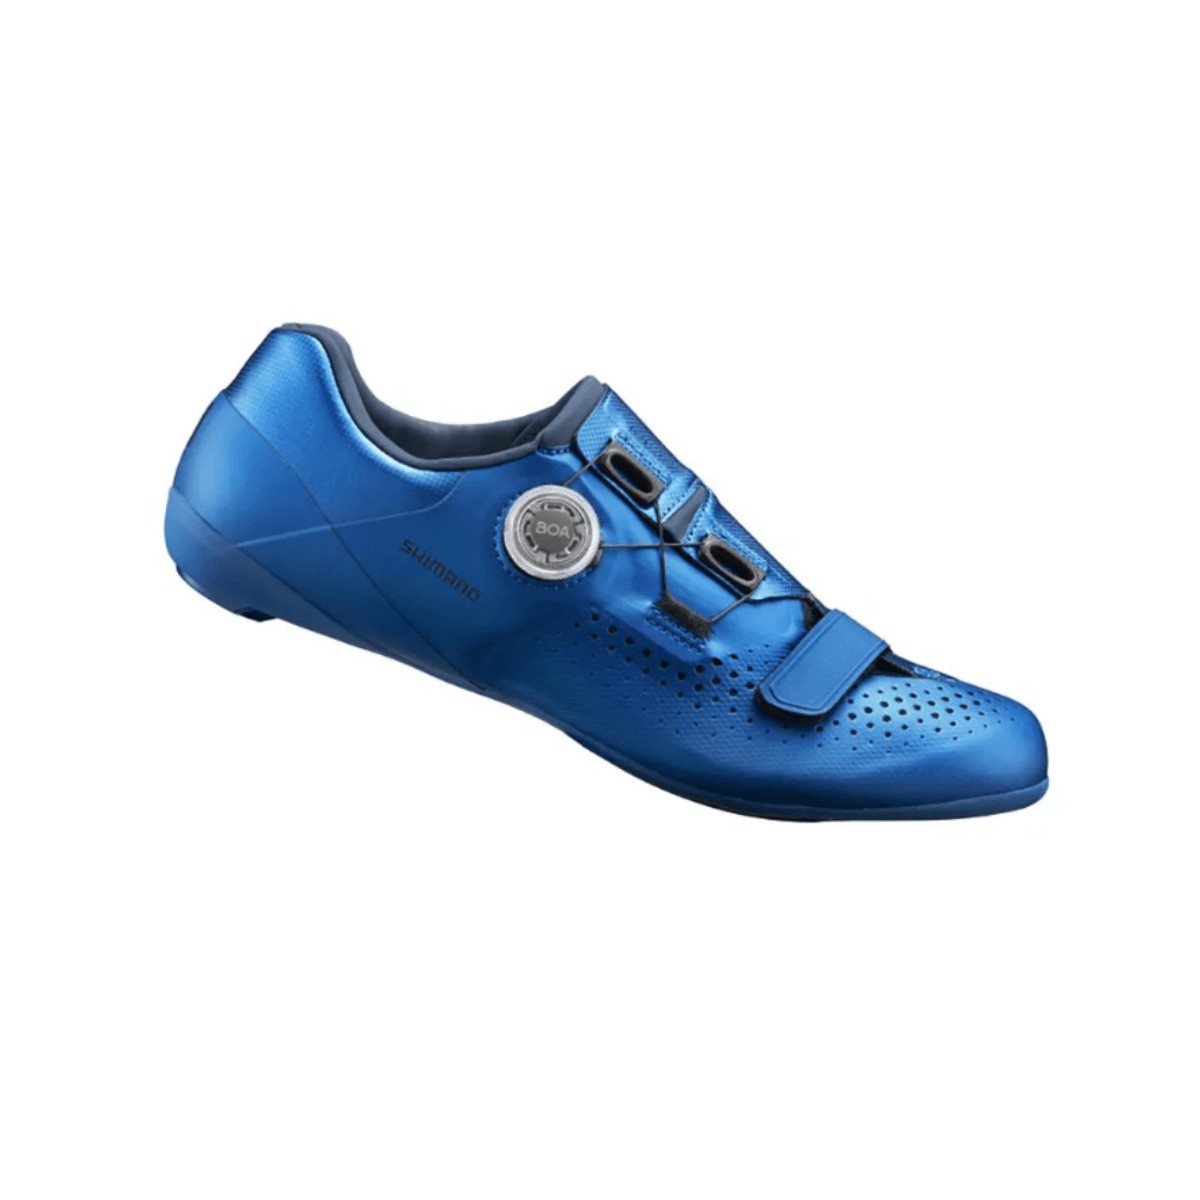 Zapatillas Shimano RC500 Road Azul, Talla 41 - EUR